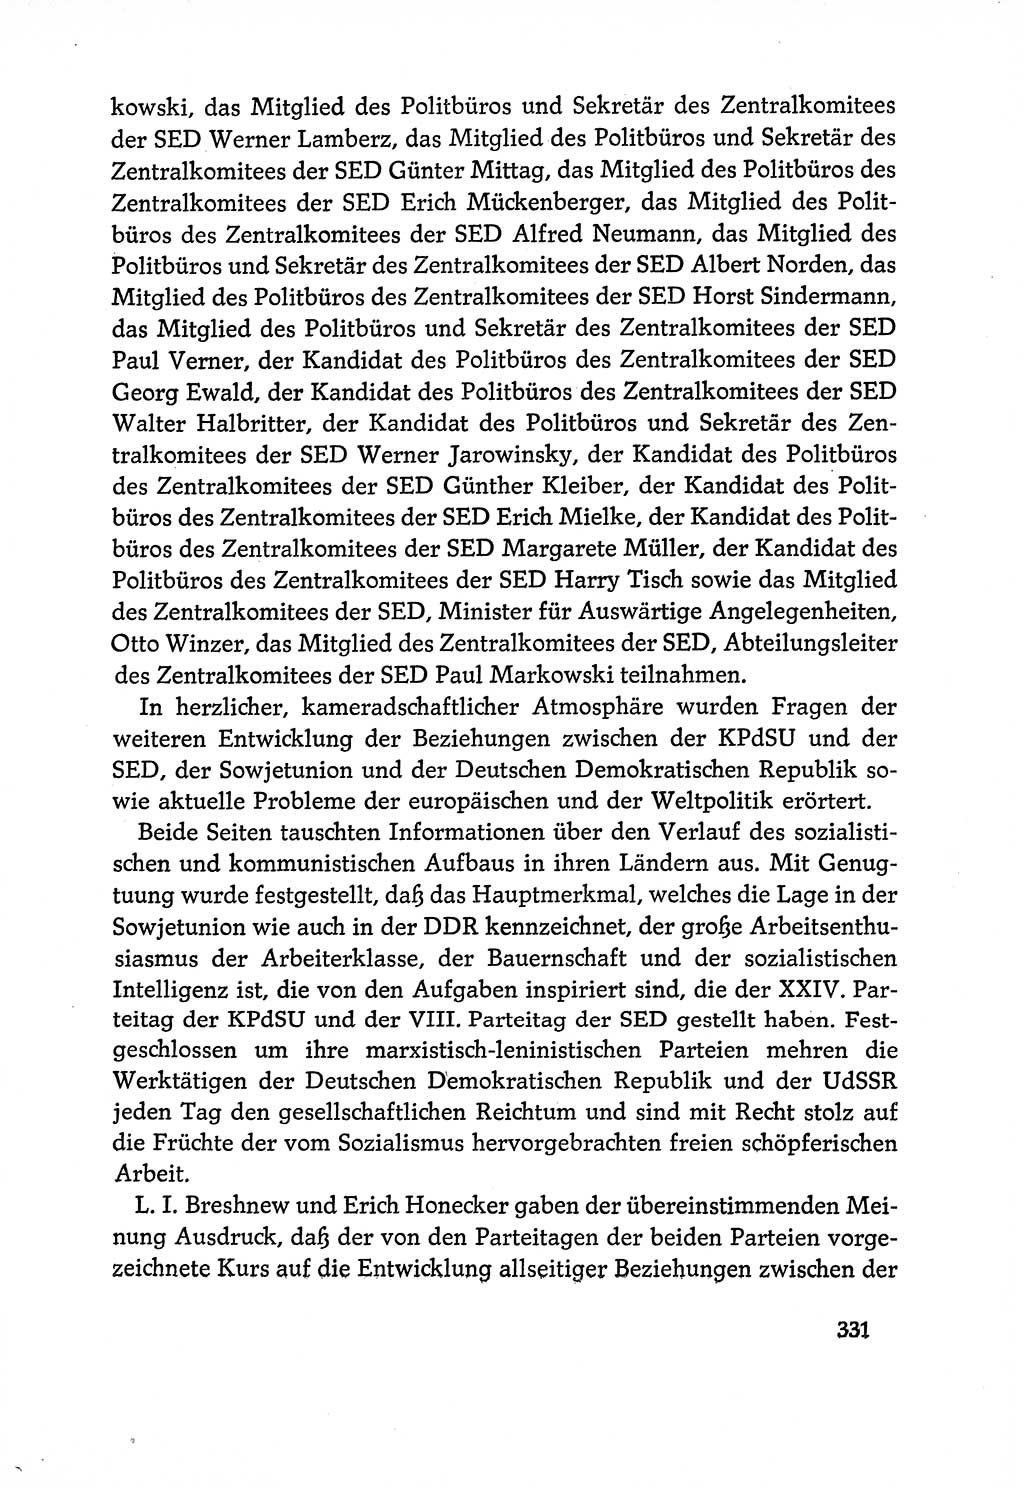 Dokumente der Sozialistischen Einheitspartei Deutschlands (SED) [Deutsche Demokratische Republik (DDR)] 1970-1971, Seite 331 (Dok. SED DDR 1970-1971, S. 331)